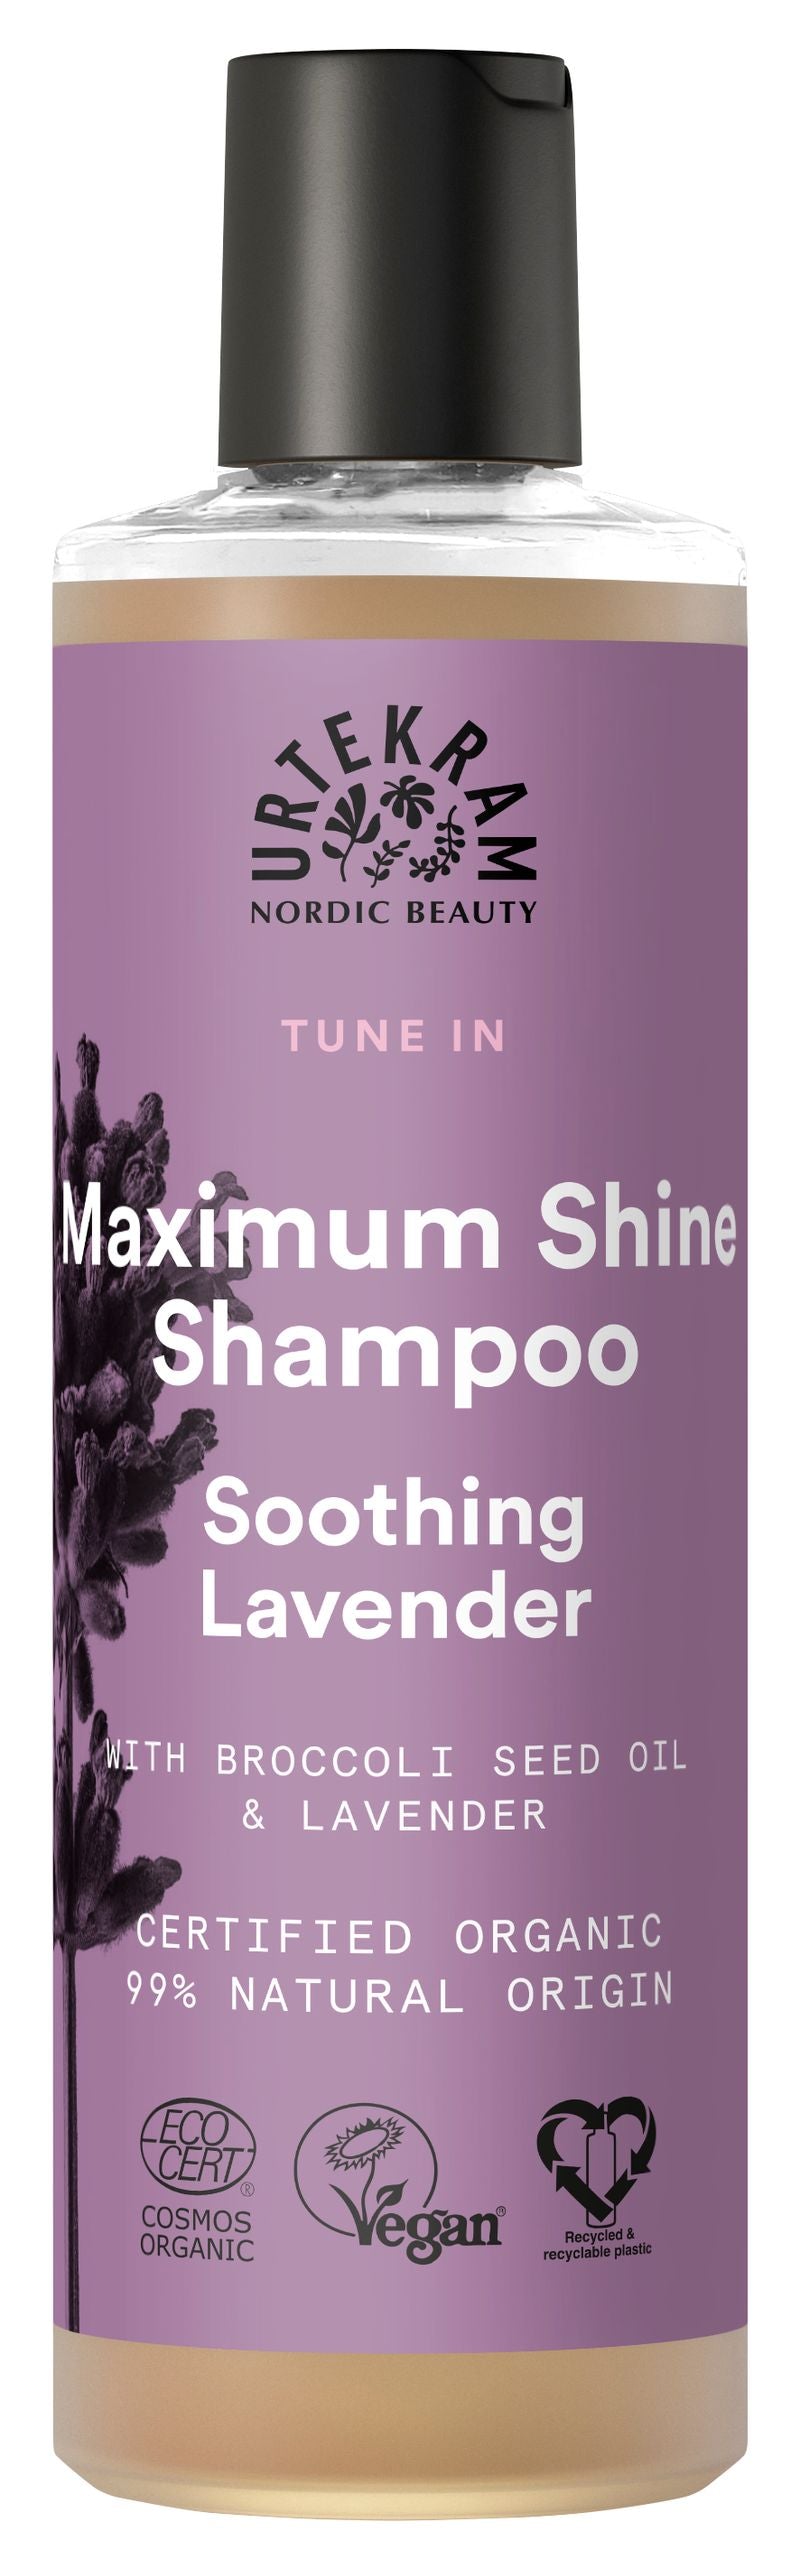 Soothing Lavender Maximum Shine Shampoo 250 ml